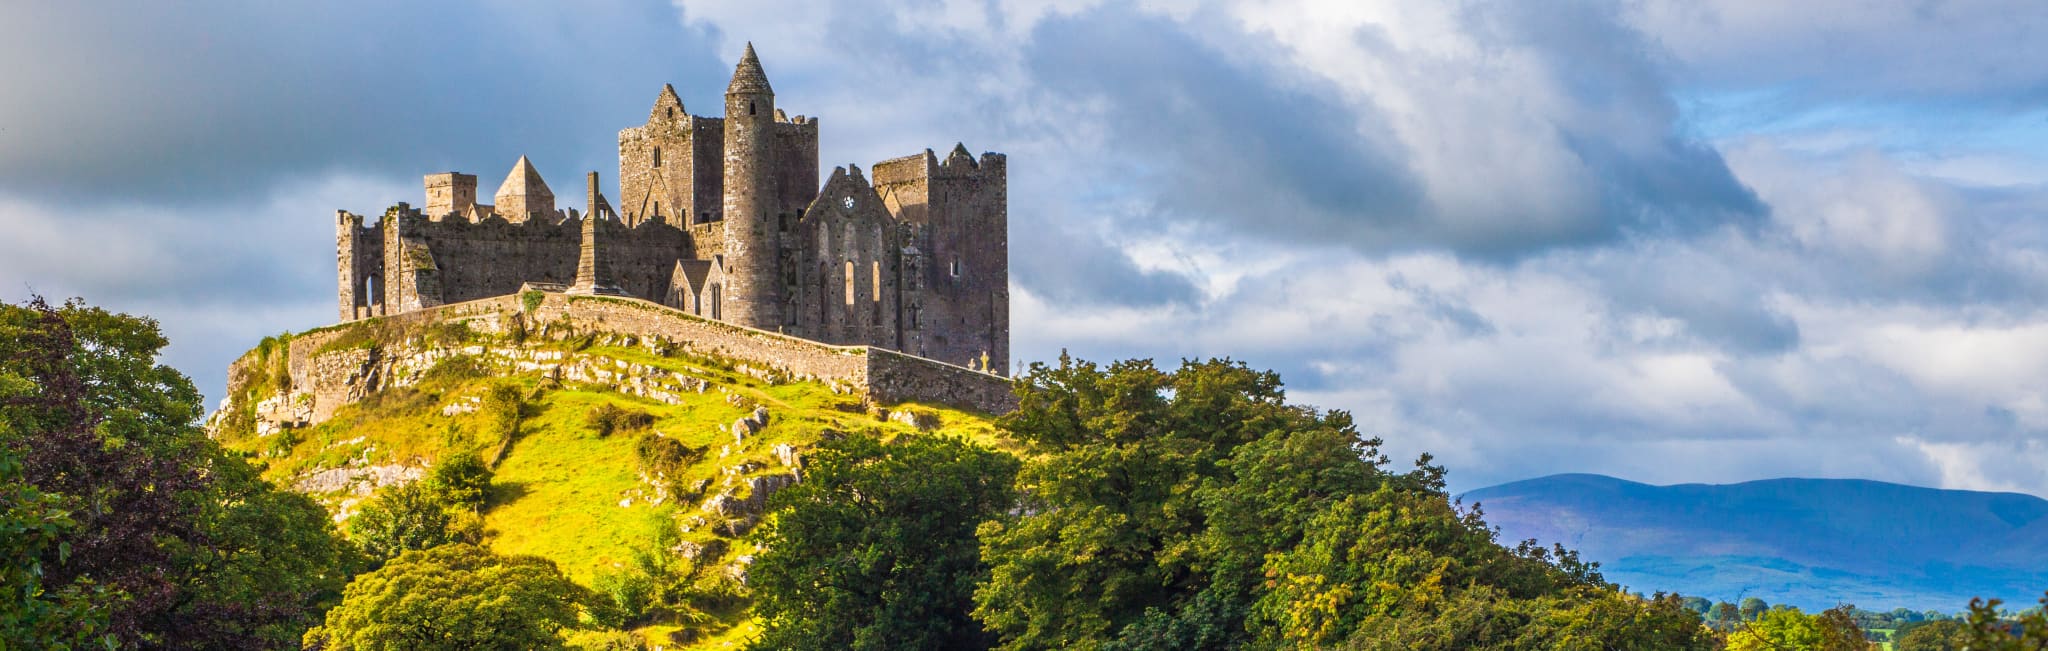 ireland castle tour packages